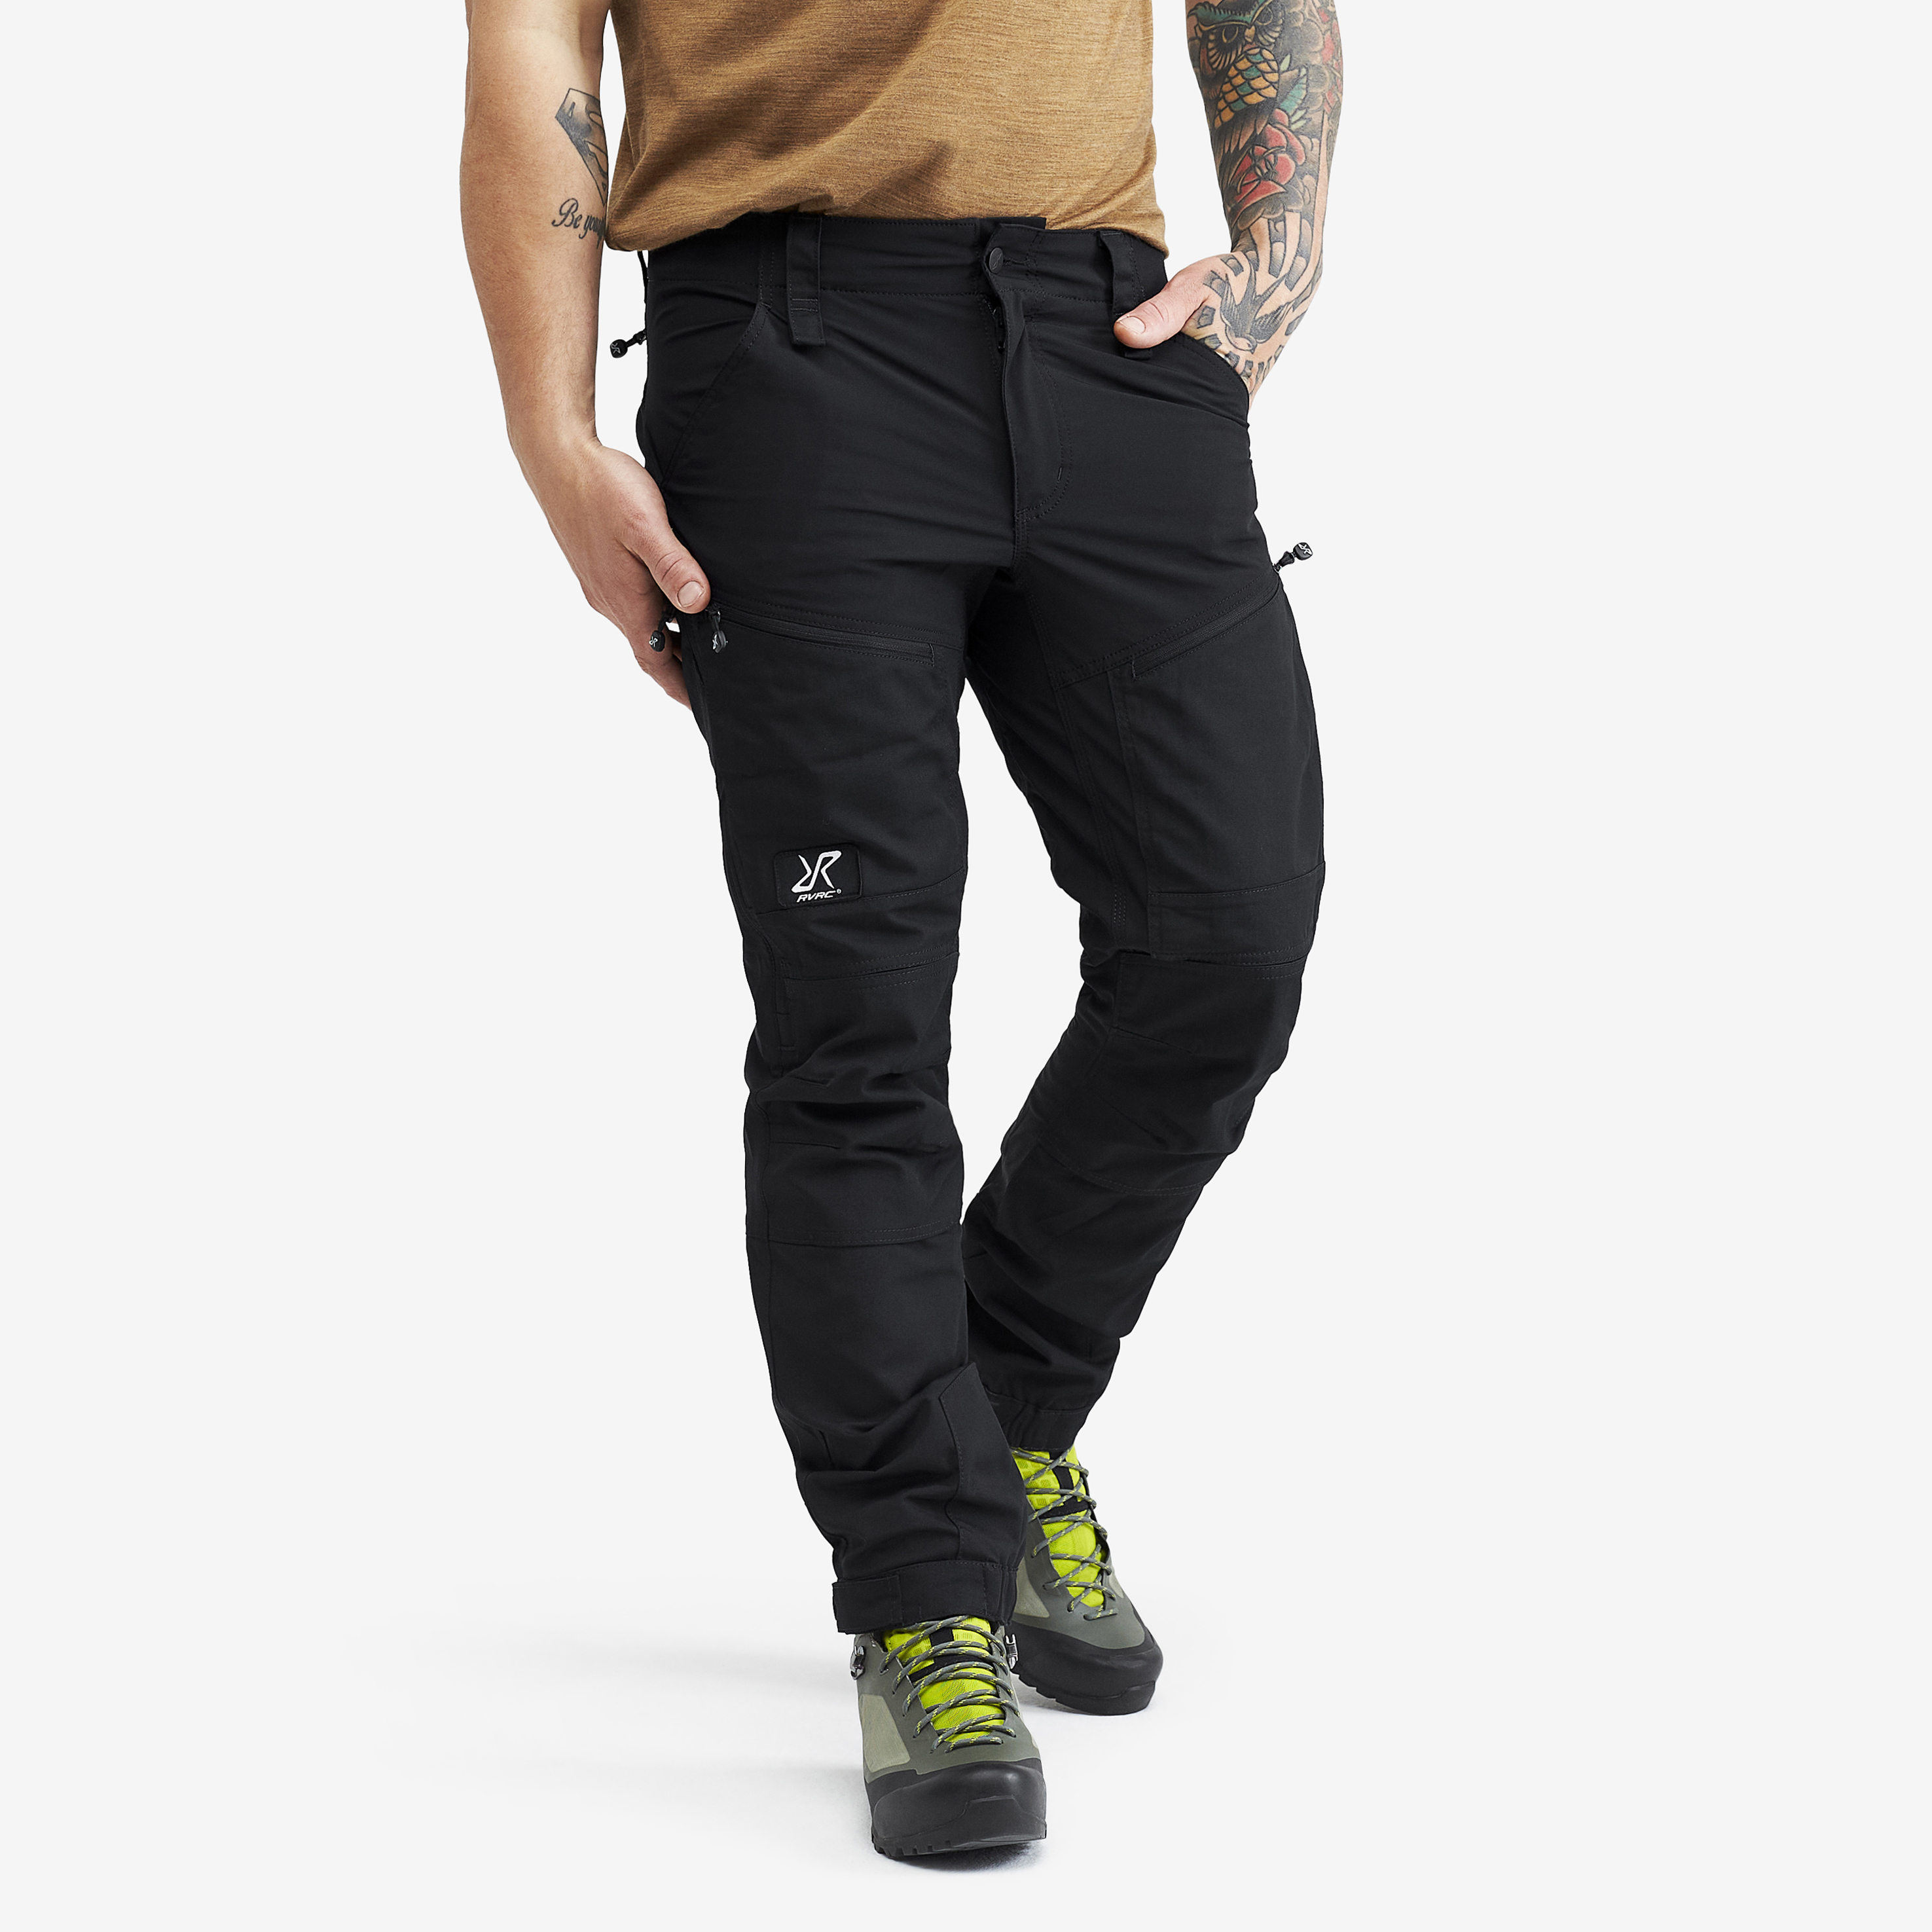 RVRC GP Pro Short turistické kalhoty pro muže v černé barvě